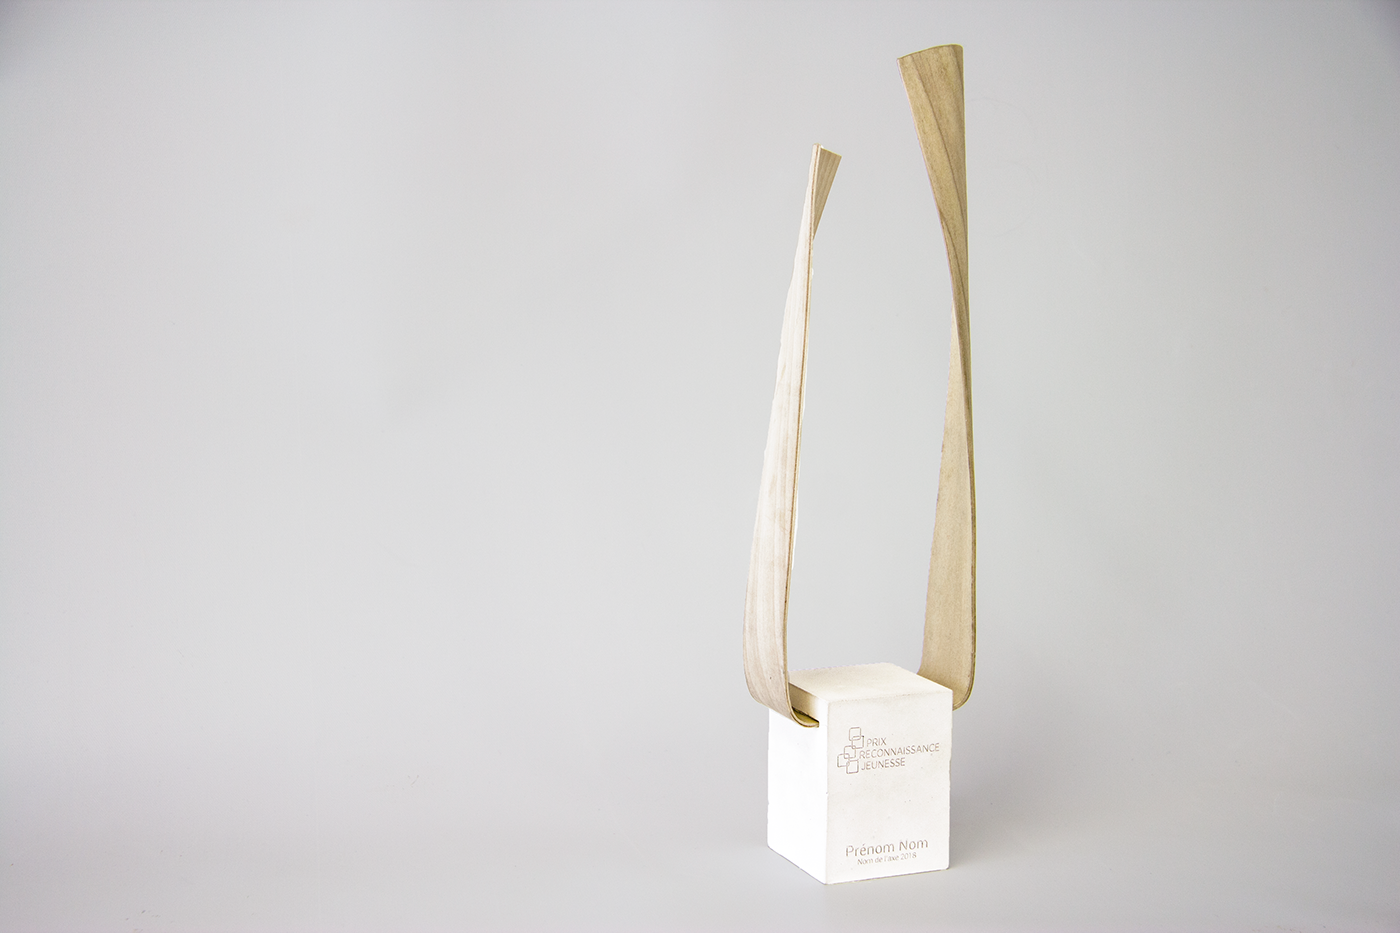 trophy youth wood cintrage Plâtre award Ipséité